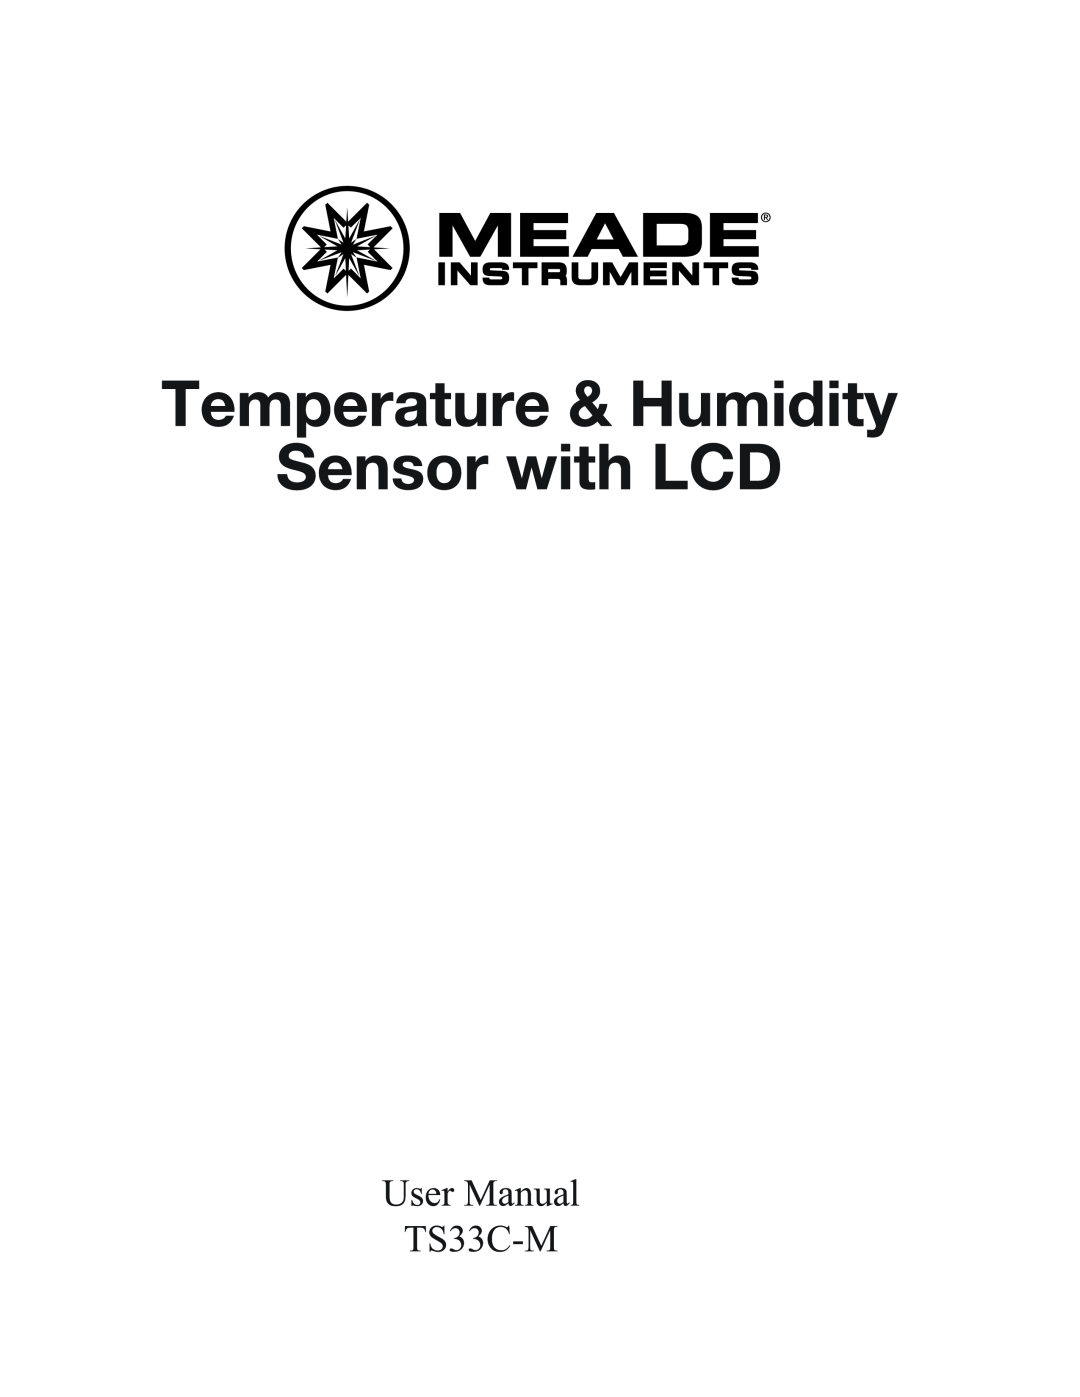 Meade TS33C-M user manual User Manual 